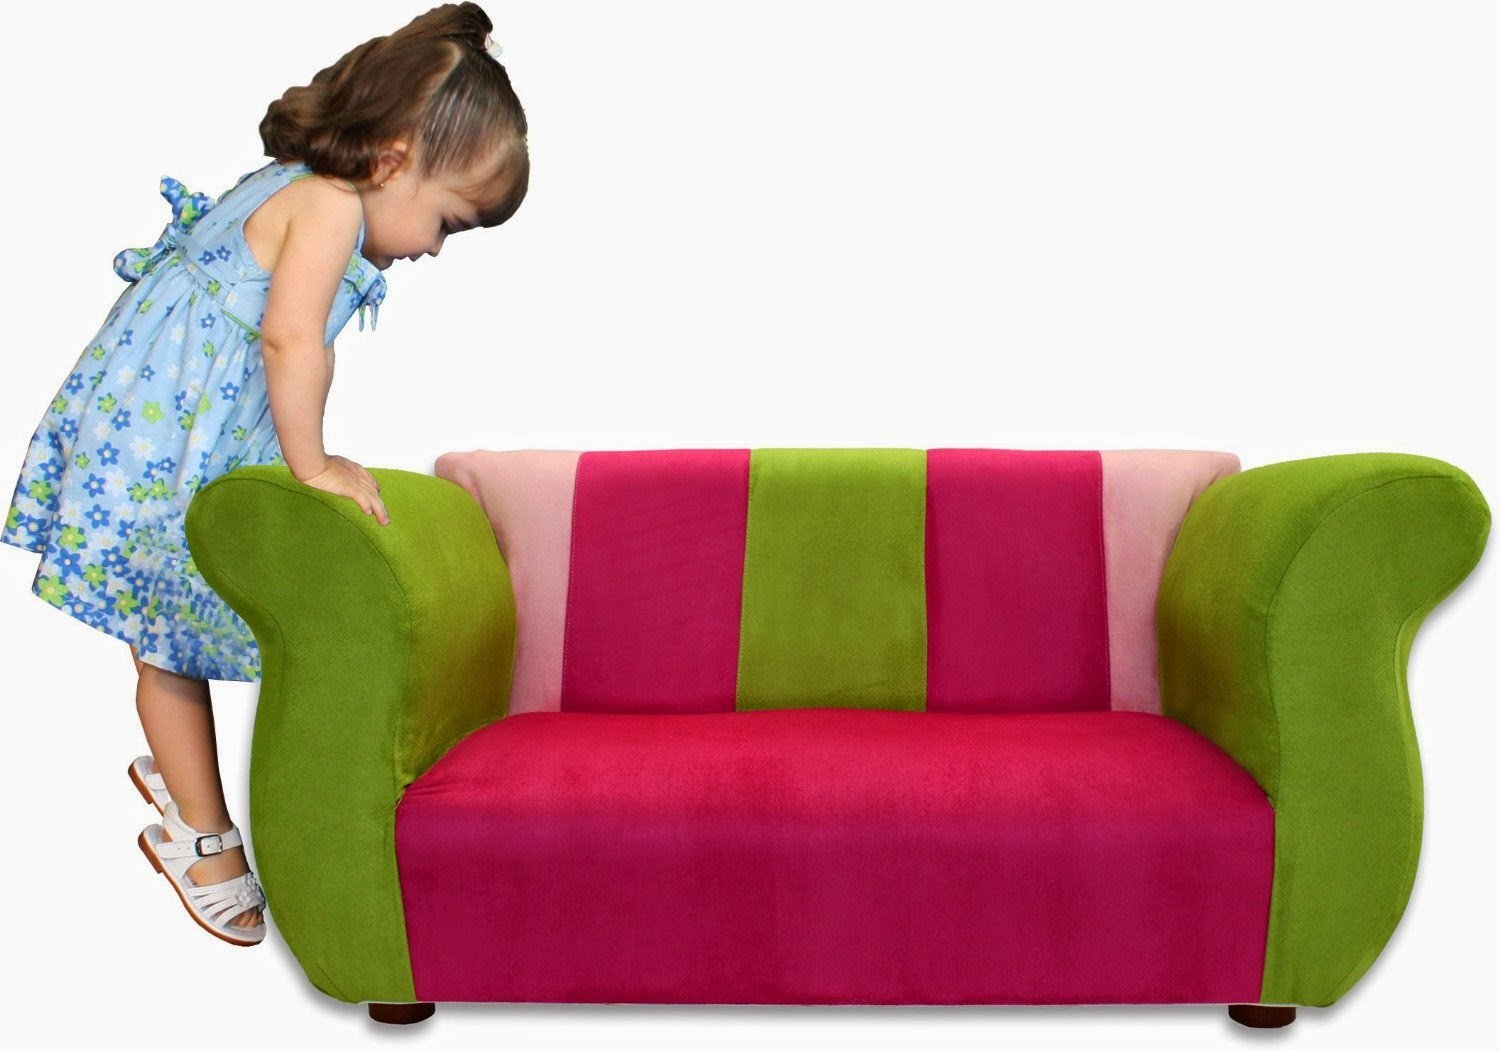 Sofa pictures. Диван для детей. Маленький детский диванчик. Мягкий диванчик для детей. Диван малыш.